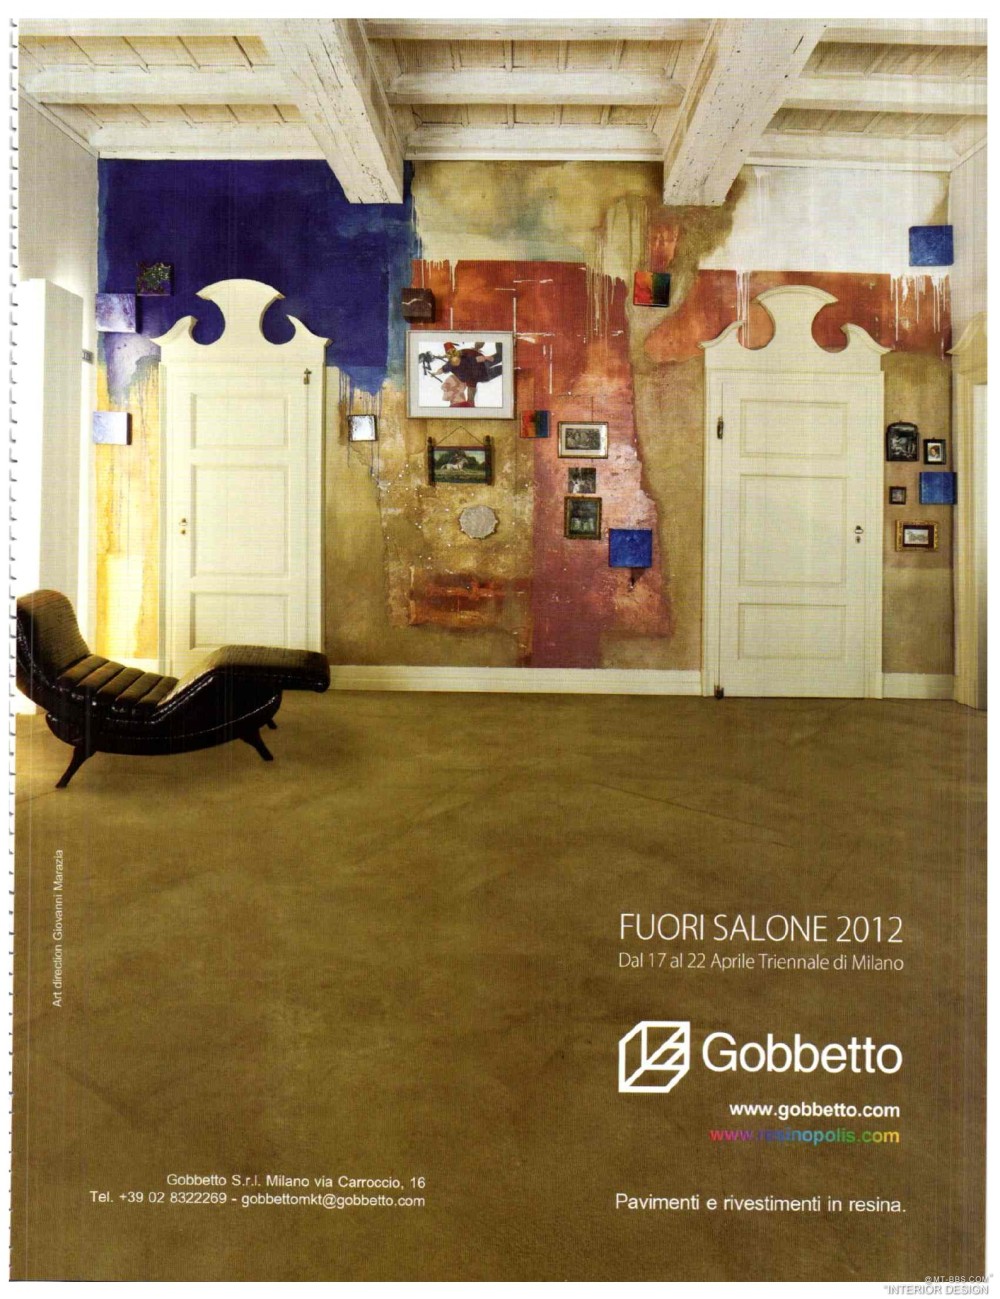 意大利AD 杂志 2012年全年JPG高清版本 全免（上传完毕）_0187.jpg